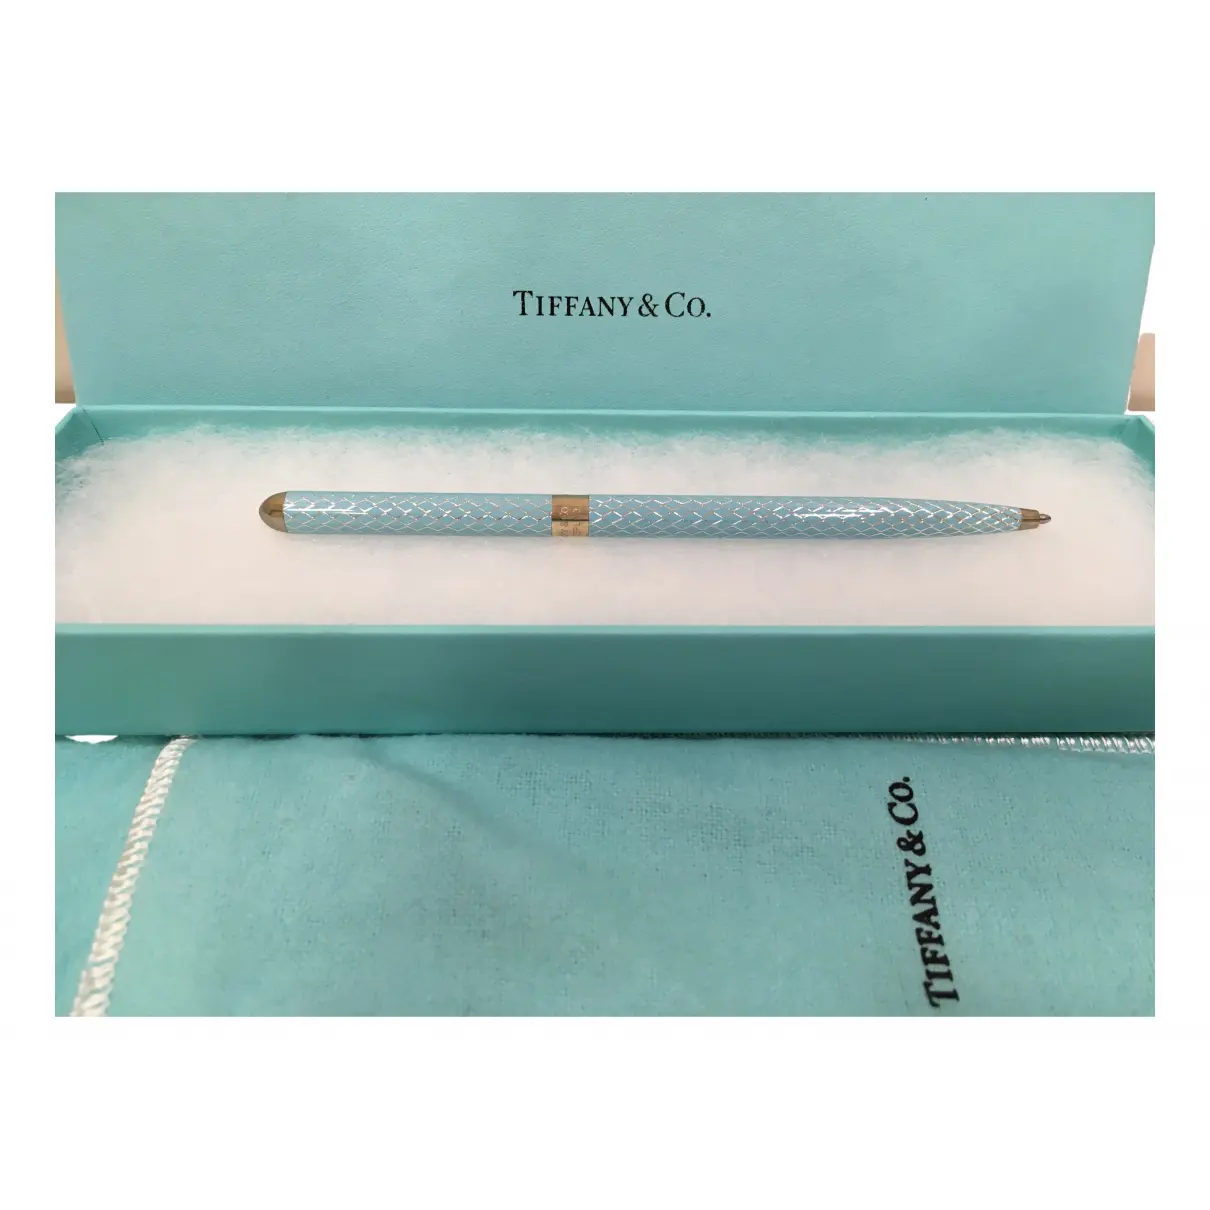 Buy Tiffany & Co Silver pen online